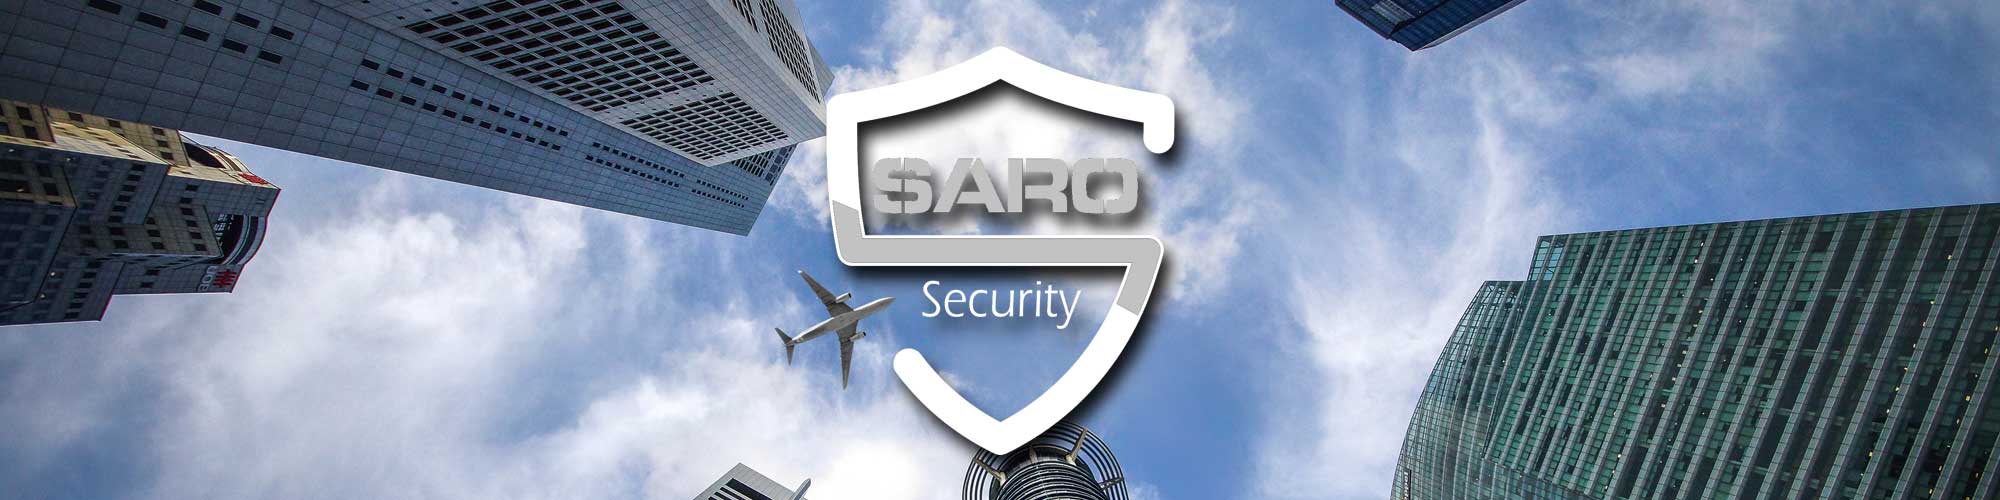  - Saro-Security Purmerend